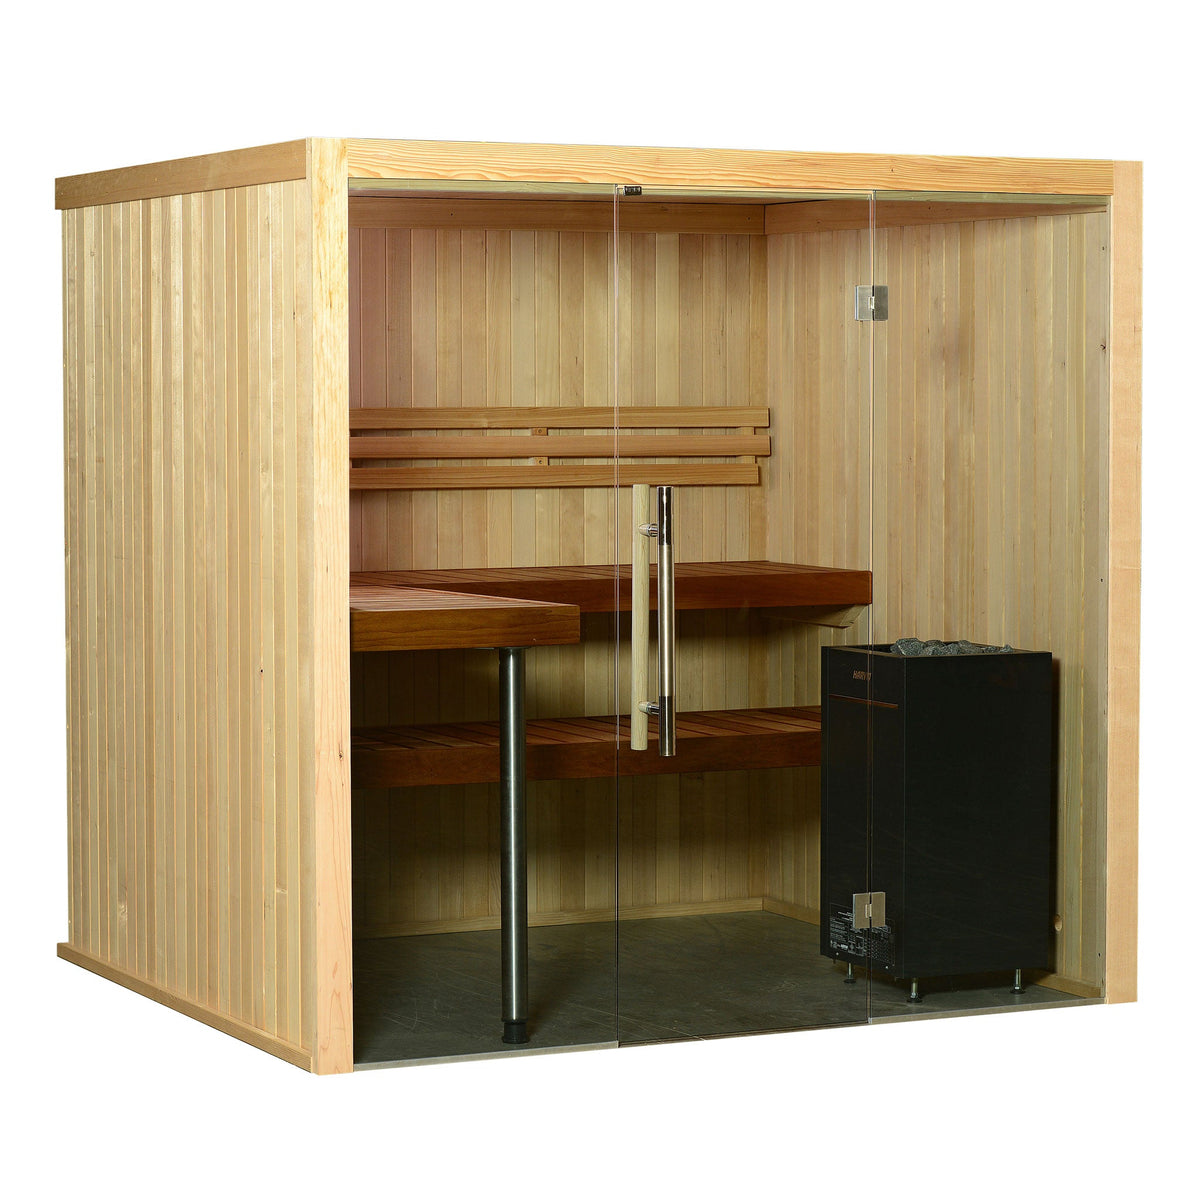 Almost Heaven Titan 6-Person Indoor Sauna-Traditional Saunas-Nordica Sauna